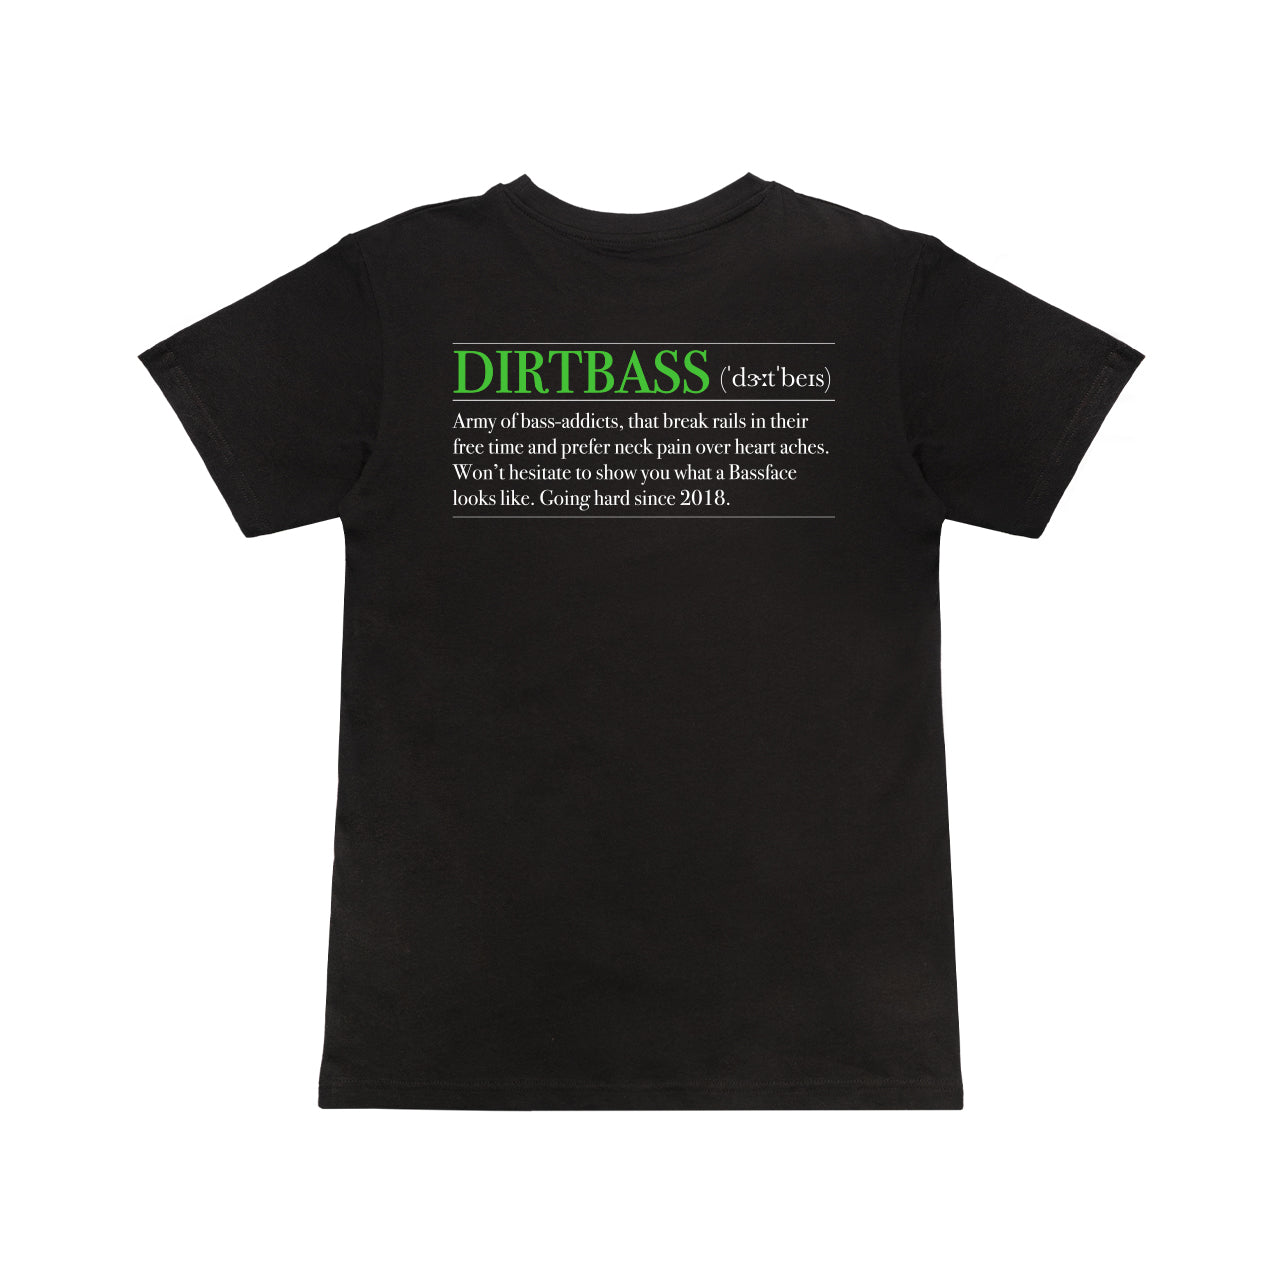 Dirtbass - Definition T-Shirt